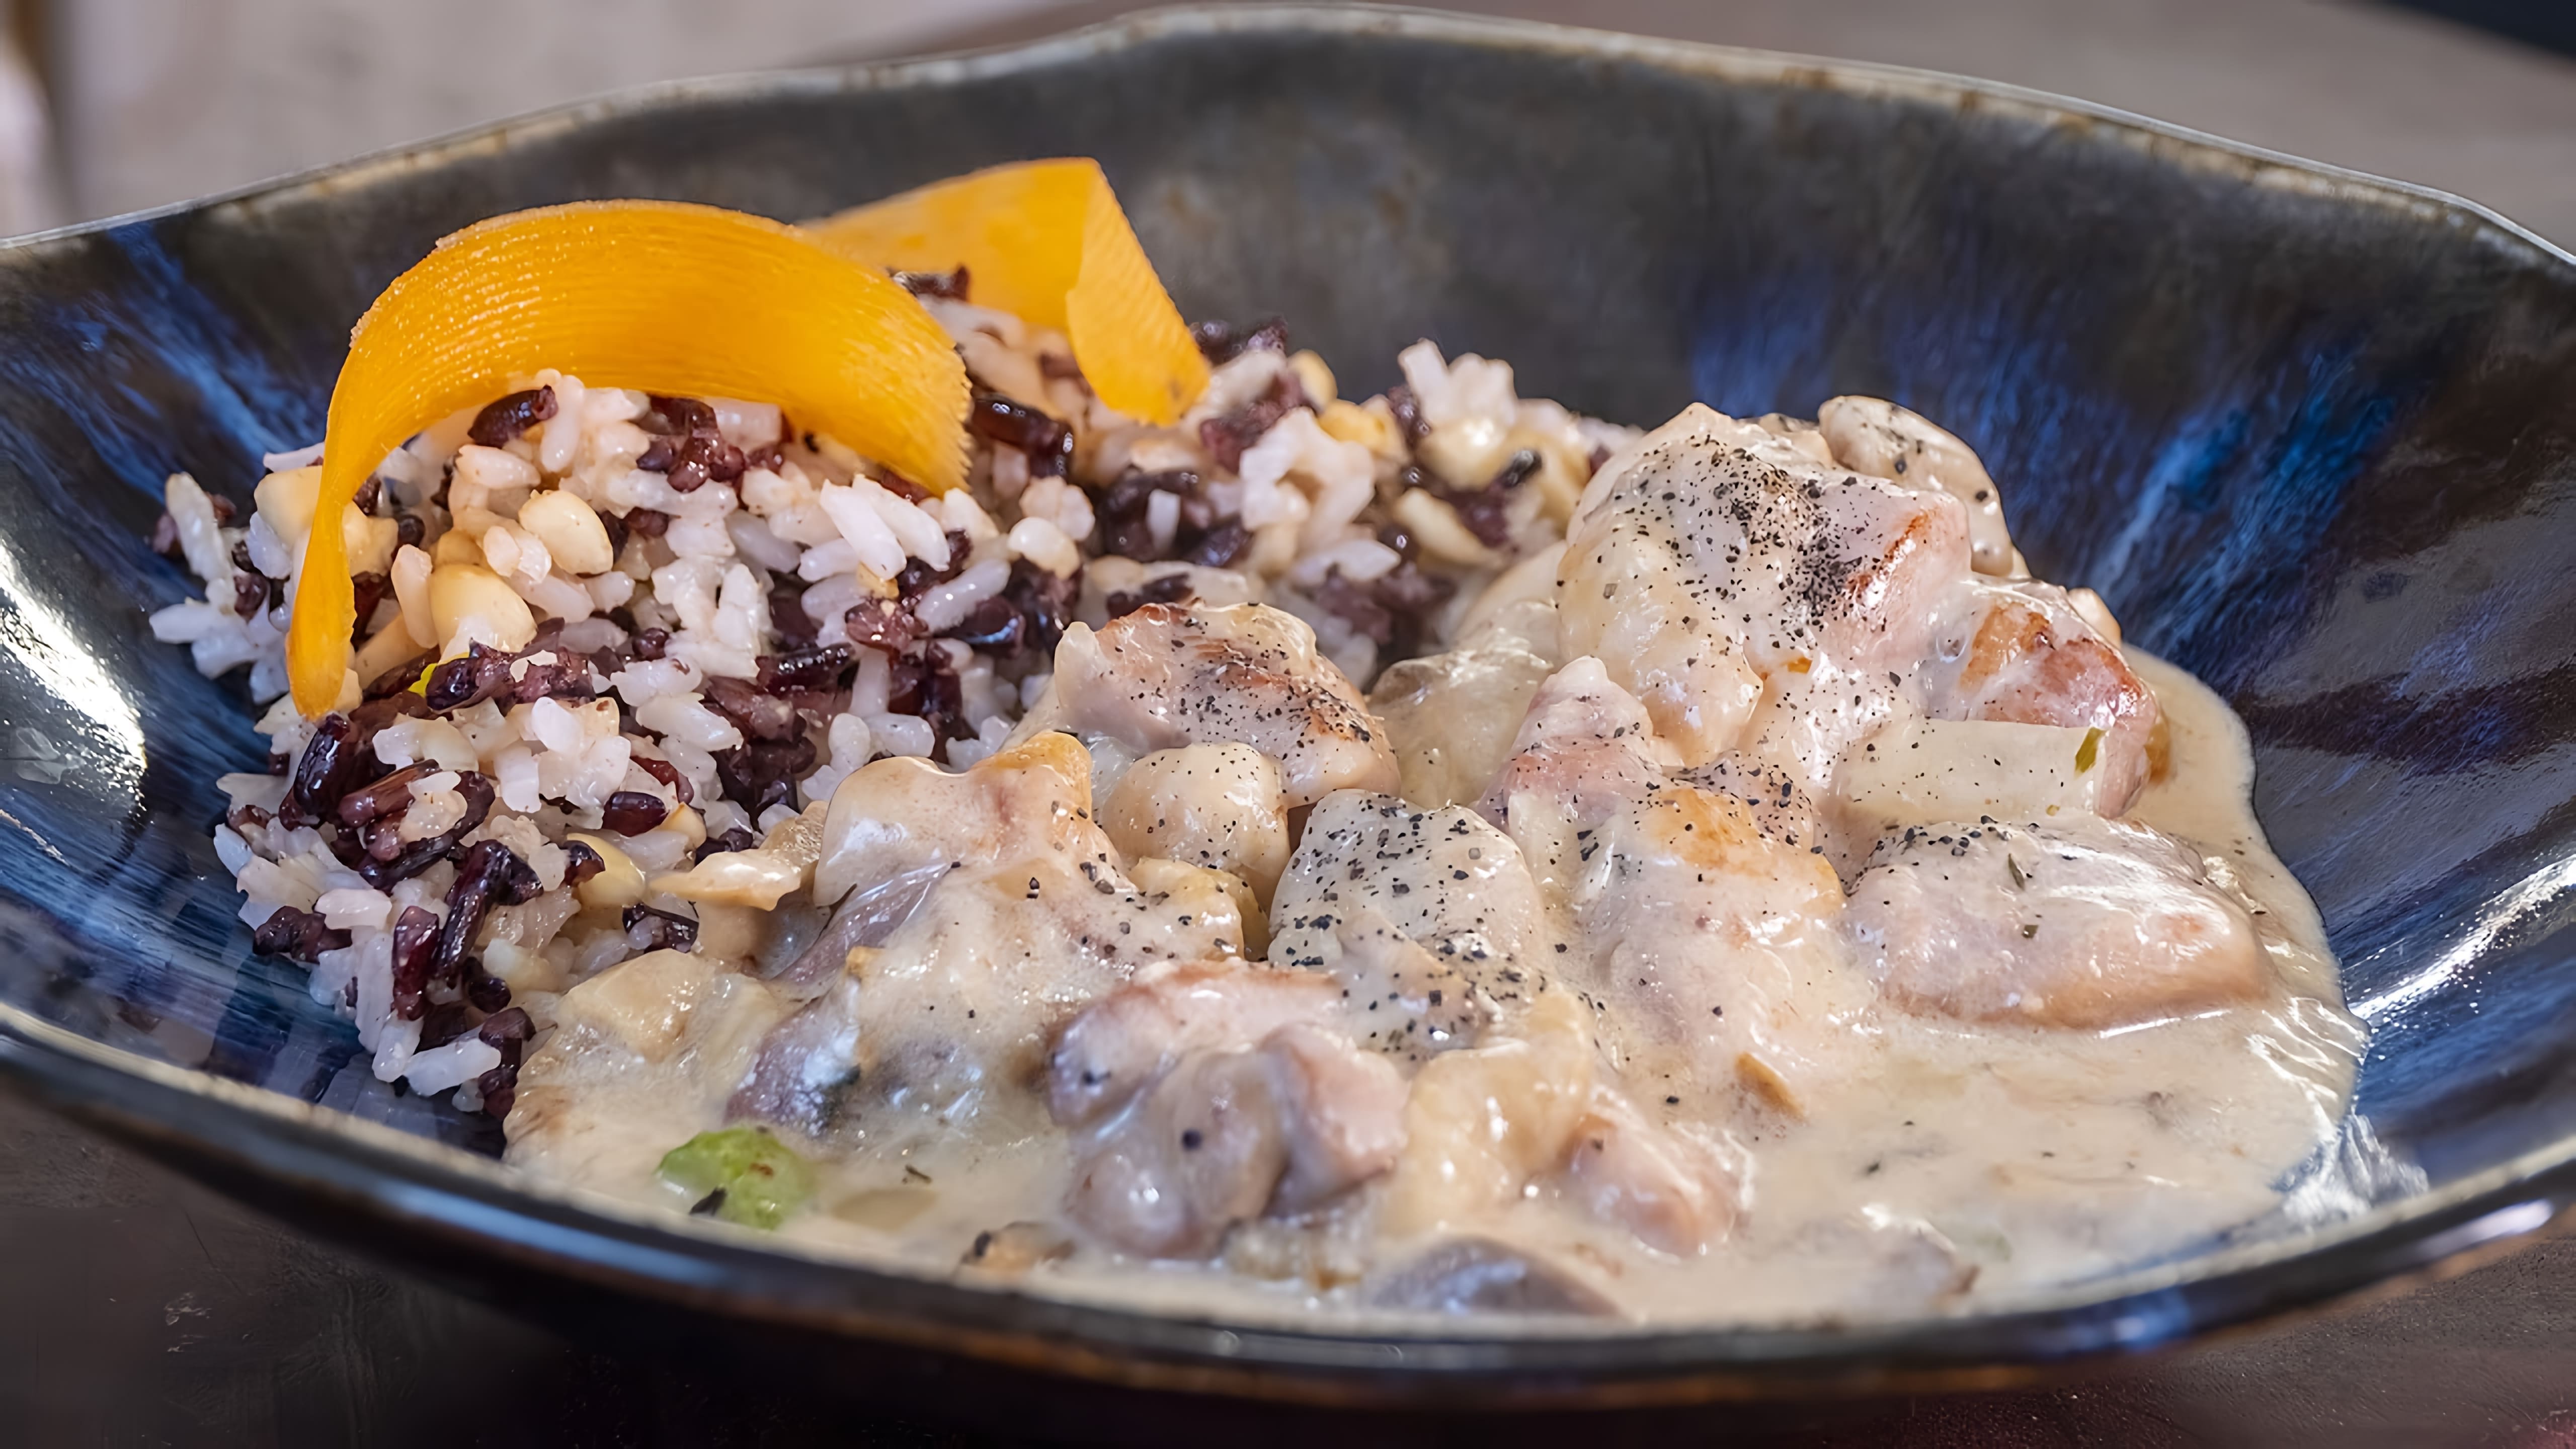 Видео как приготовить классическое французское блюдо под названием фрикассе, которое по сути является нежным рагу из куриных кусочков, овощей и сливочного соуса